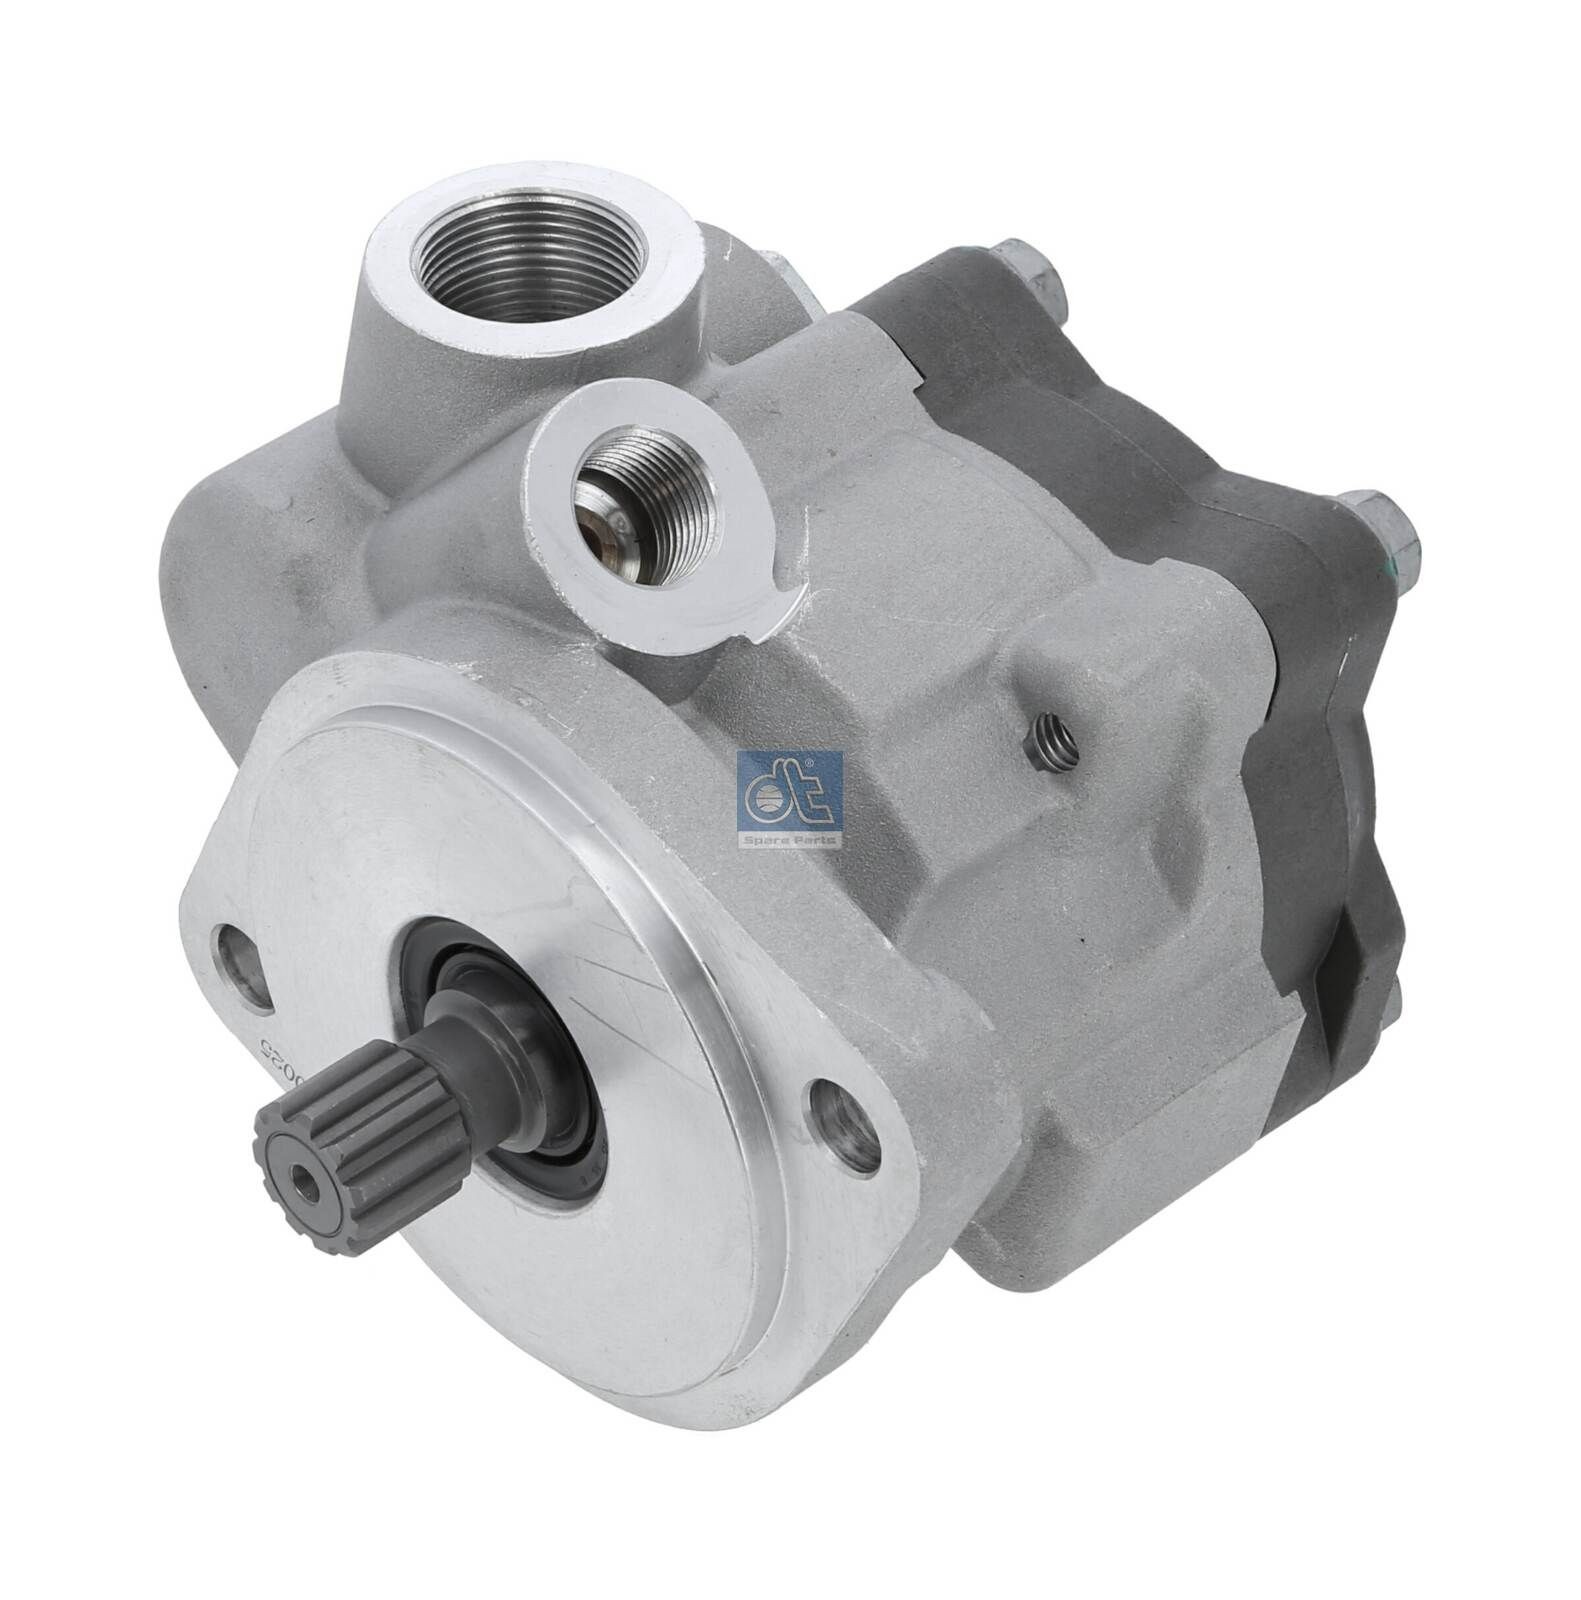 K S00 001 849 DT Spare Parts Hydraulic, M18x1,5, Vane Pump, Anticlockwise rotation Steering Pump 4.69408 buy